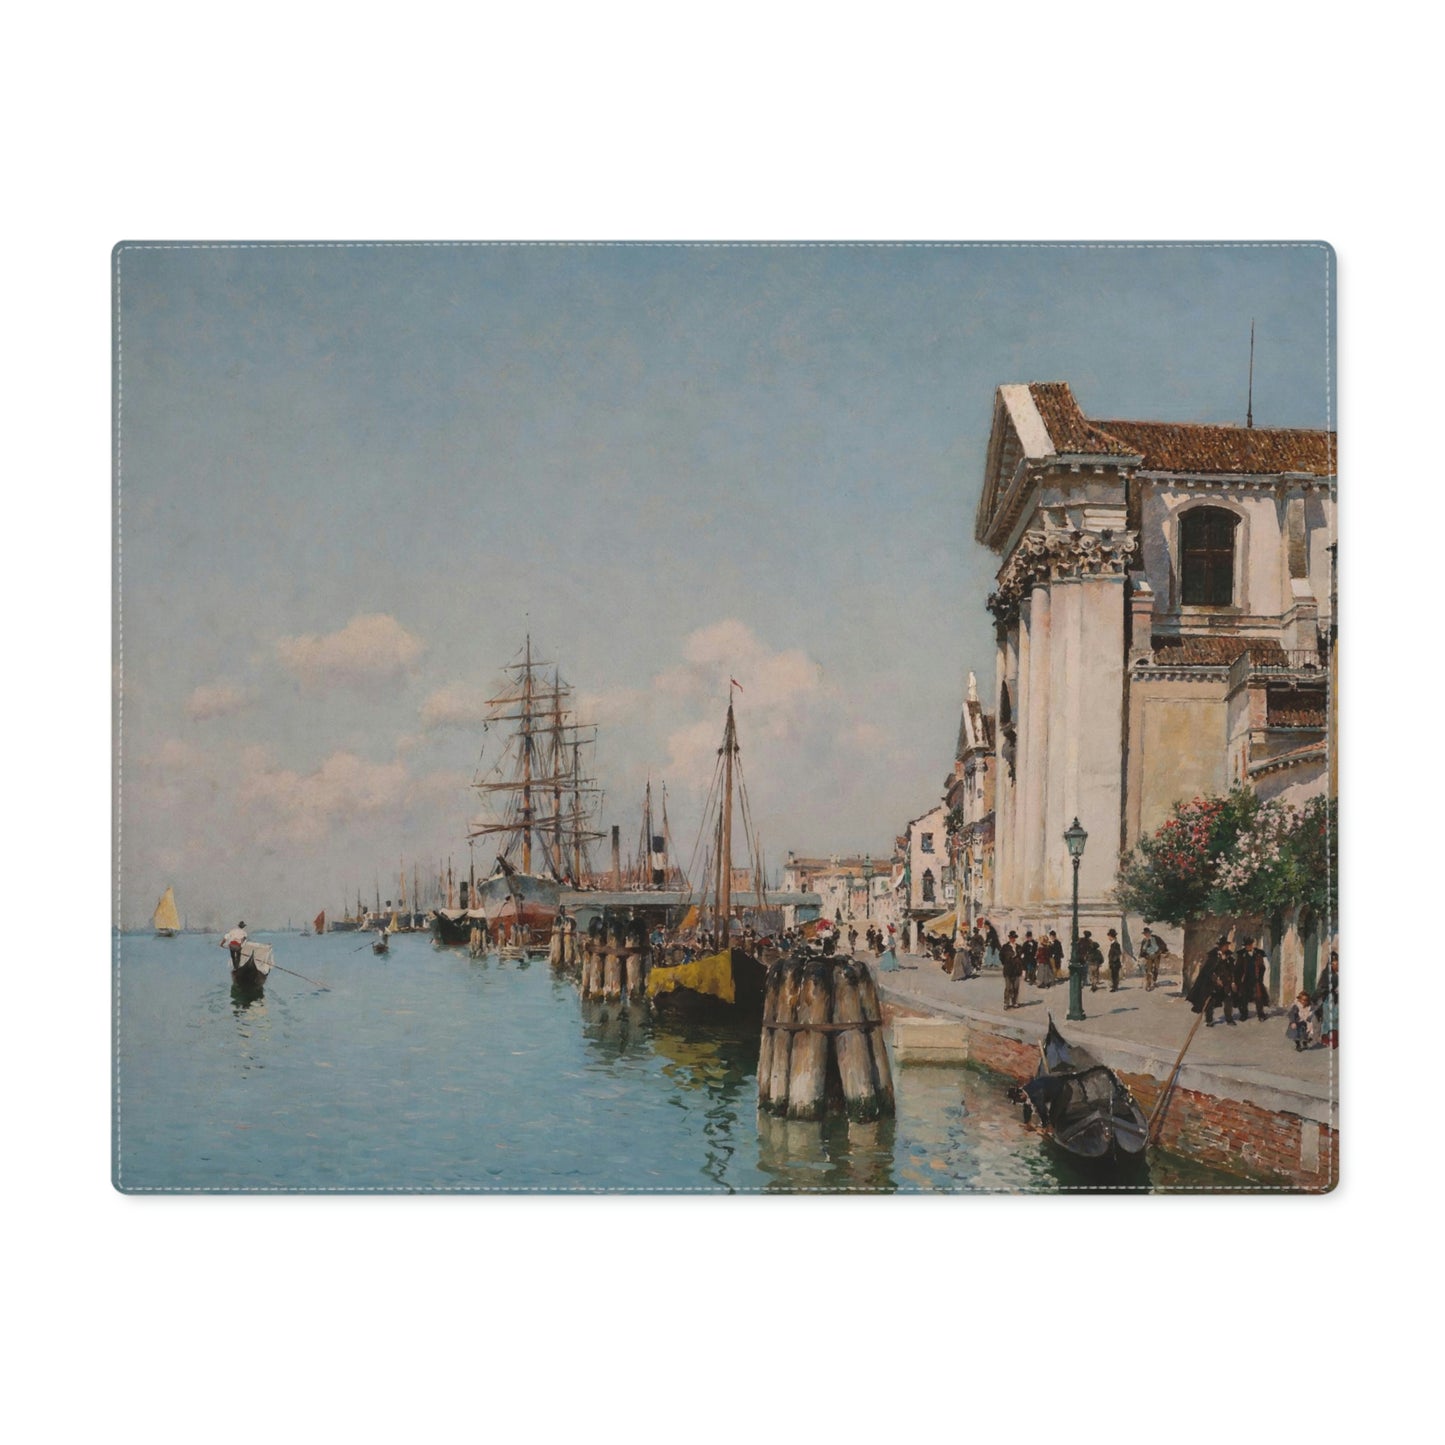 Federico del Campo: "The Giudecca Canal, Santa Maria del Rosario" - Placemat, 1pc